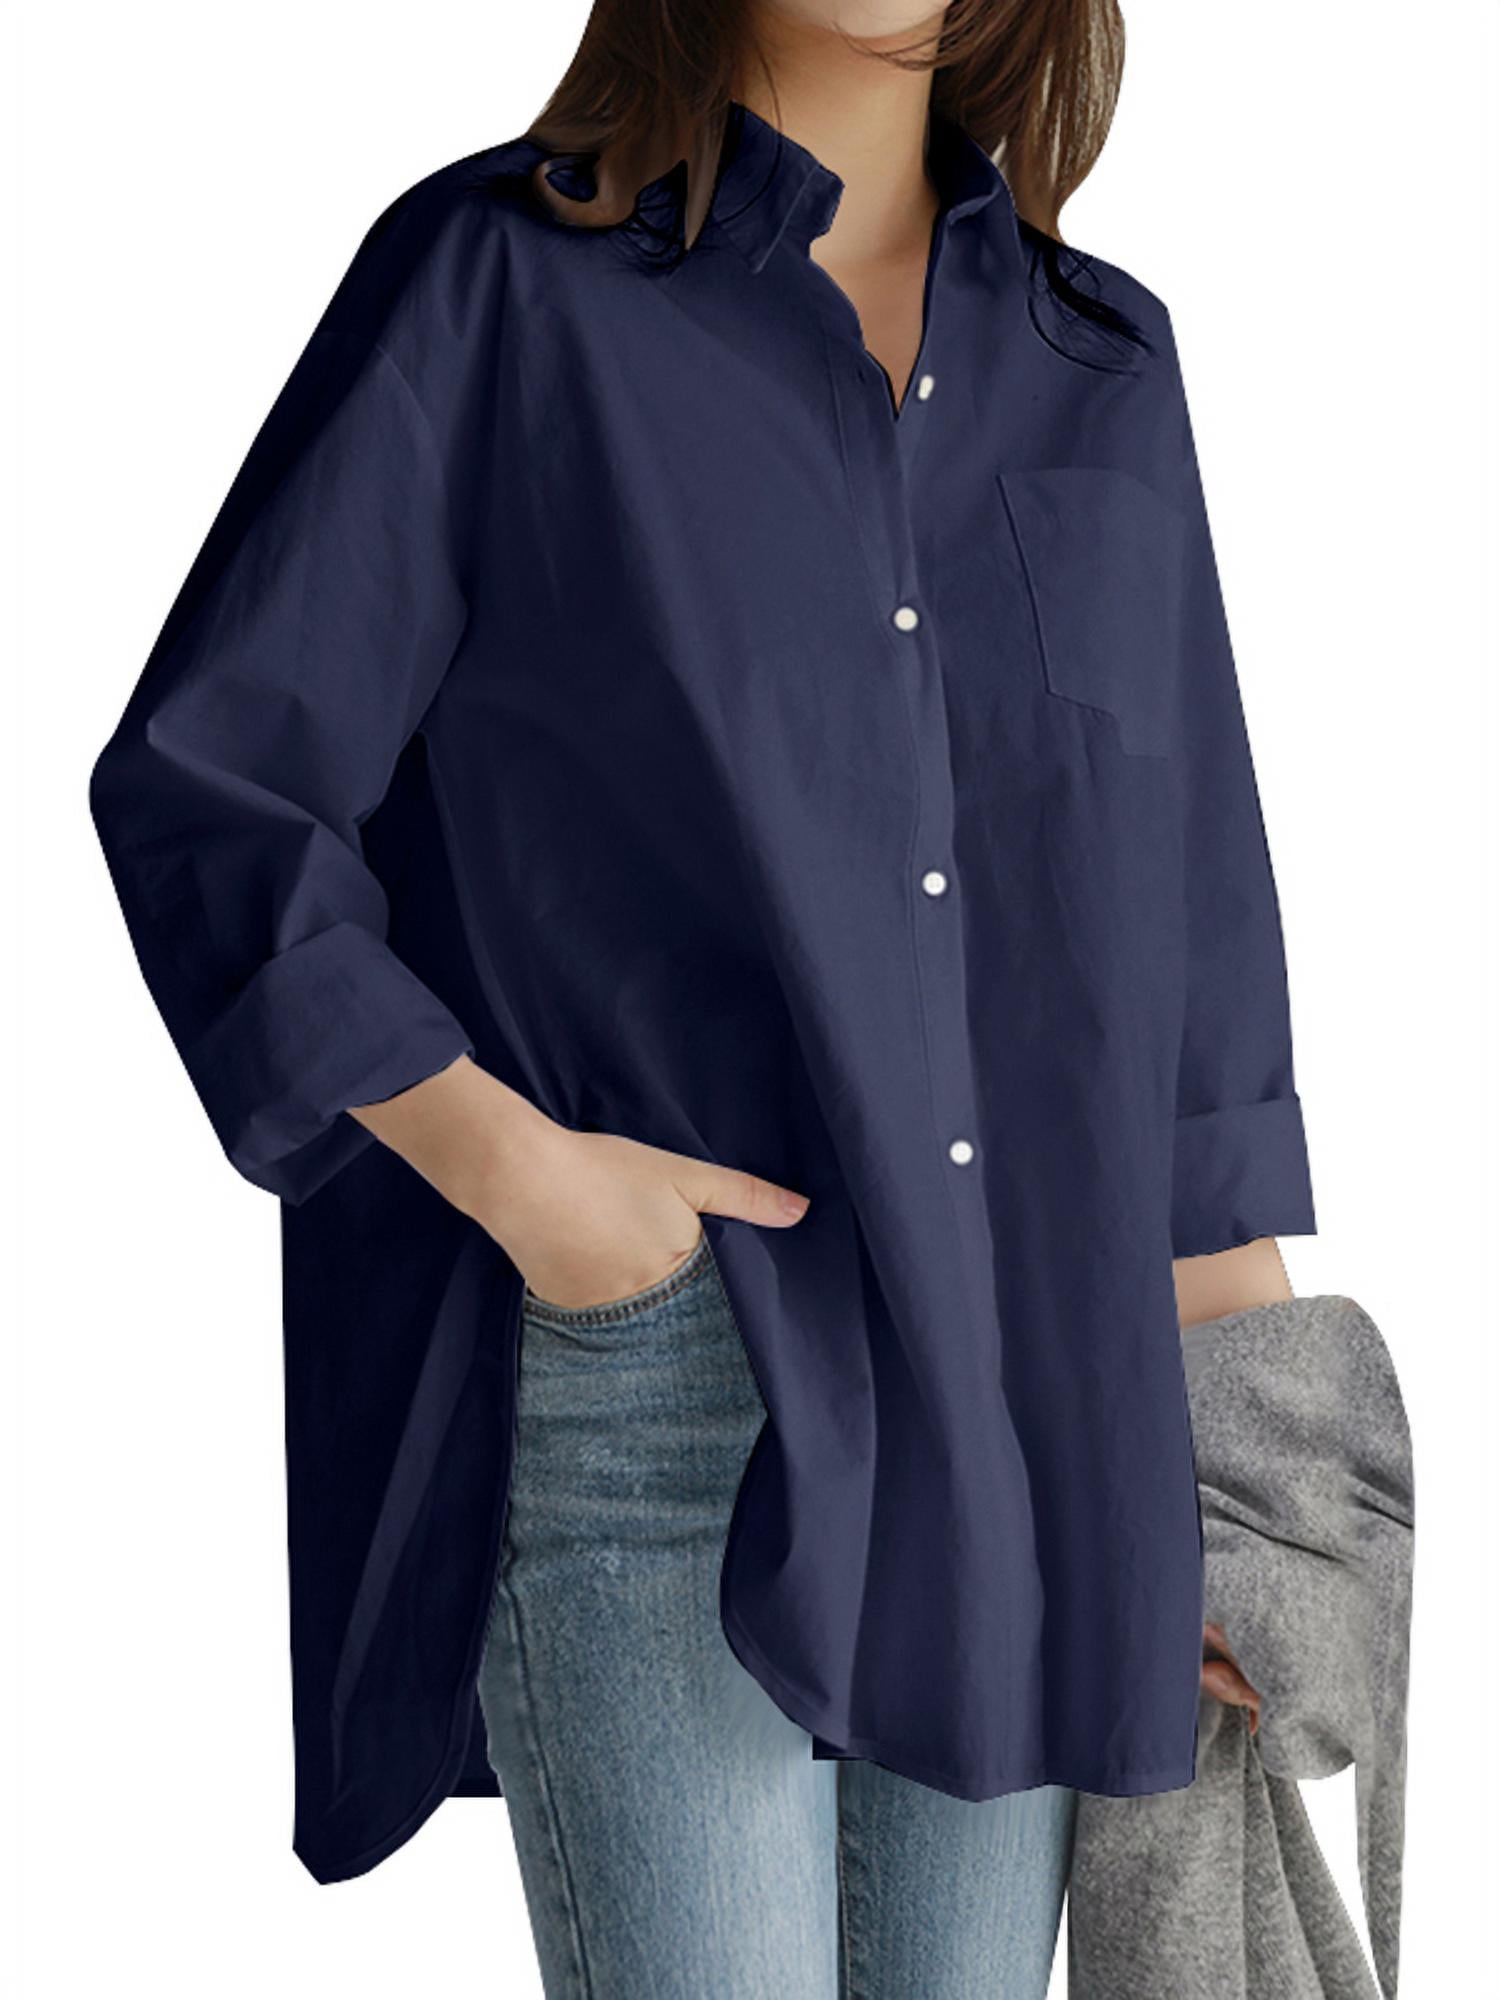 ZANZEA Women Oversize Printed Button-Down Ethnic Asymmetrical T-Shirt Top Blouse